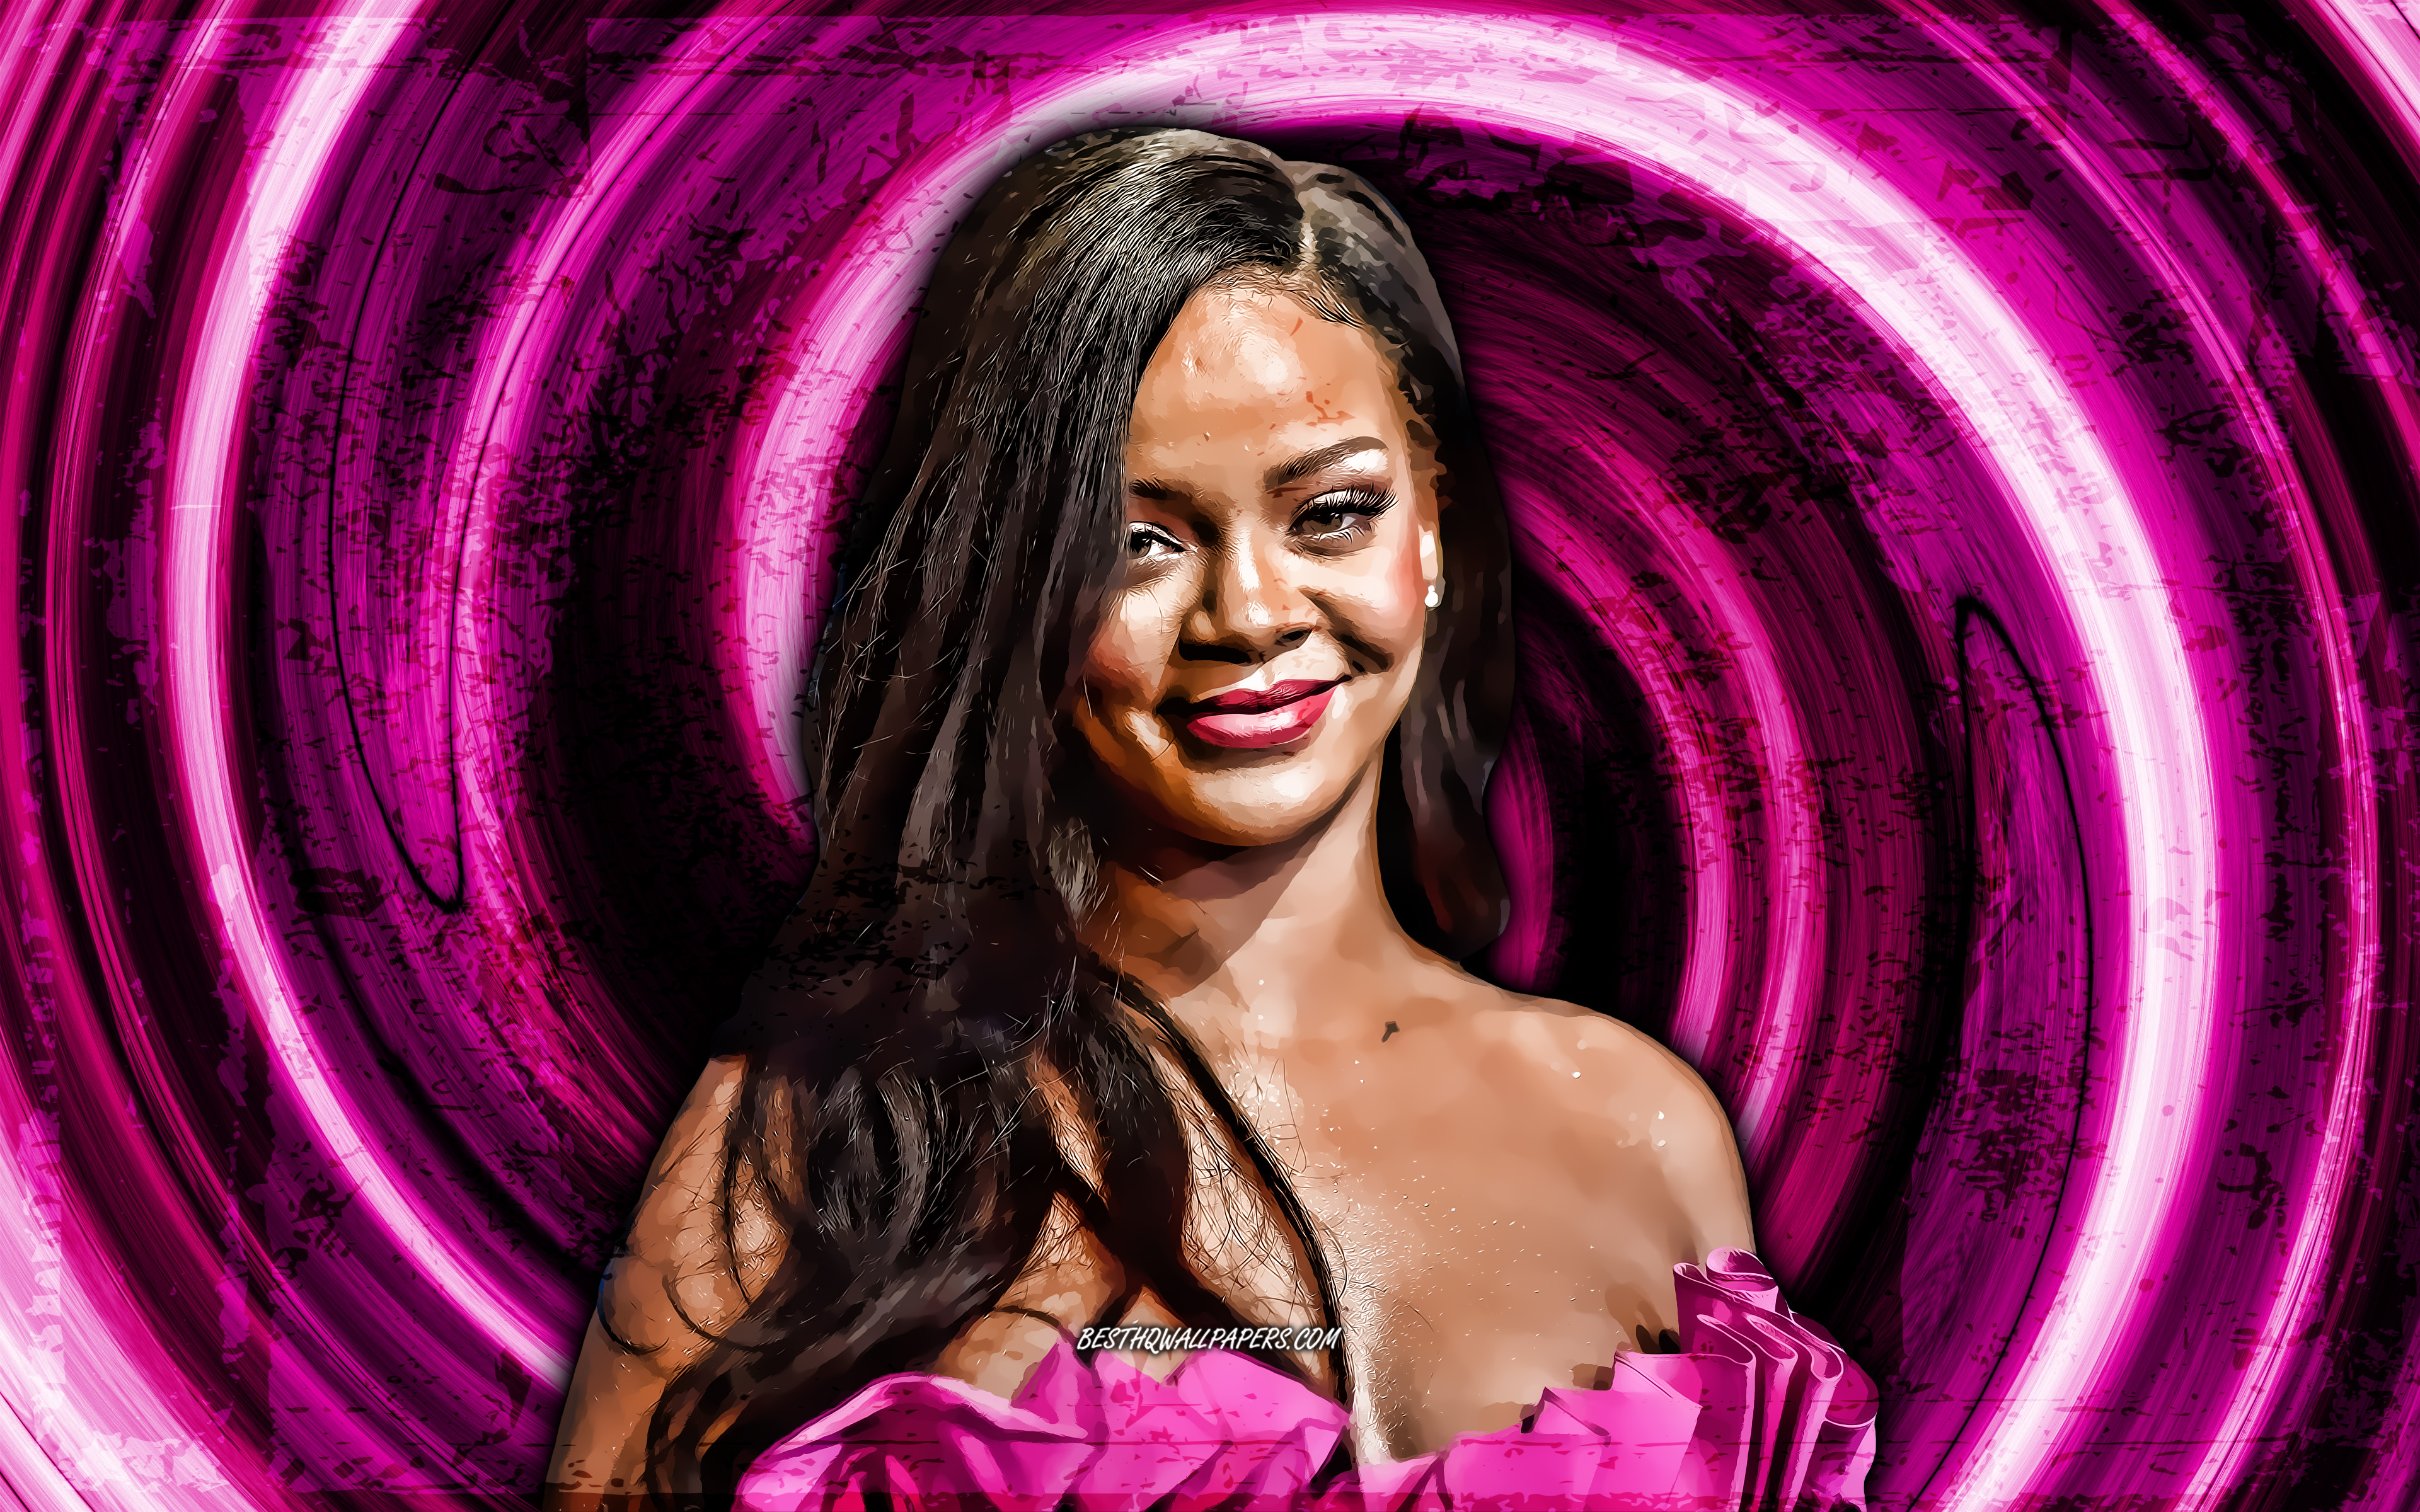 Robyn Rihanna Fenty. Американские музыкальные звезды. Распечатать раскраску лицо Робин Рианна Фенти. Звезды под музыку